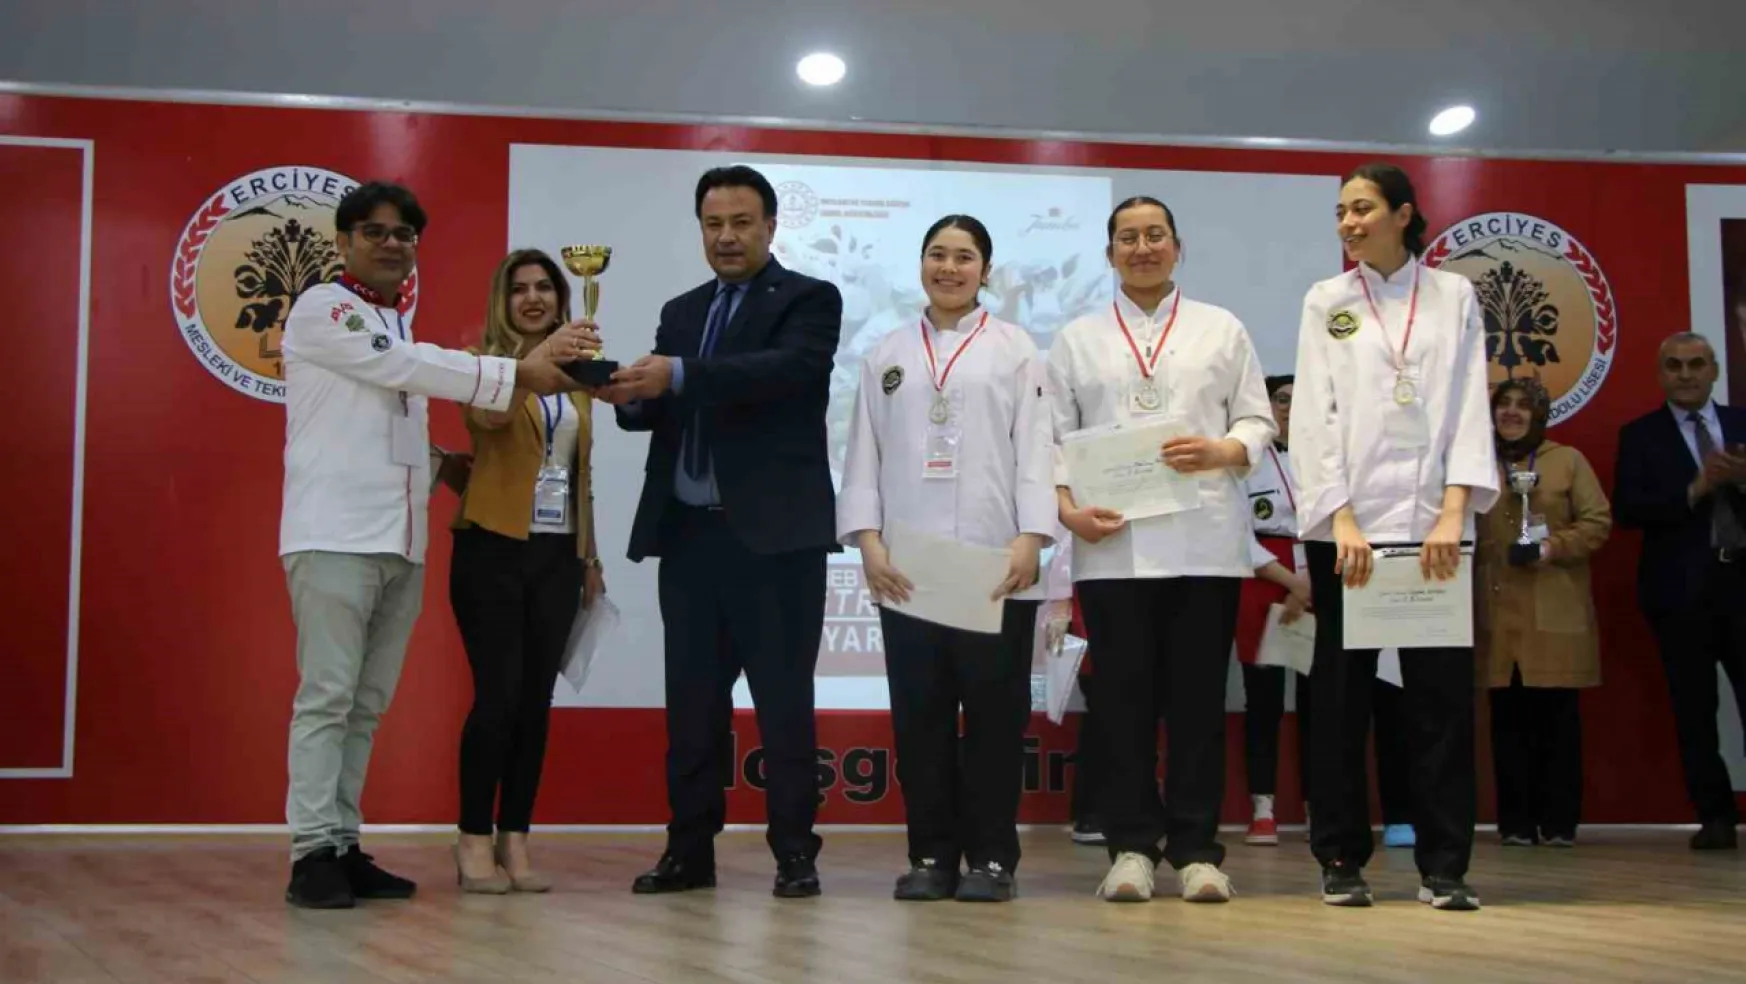 Milli Eğitim Gastronomi Festivalinde Kayseri mutfağı birinci oldu